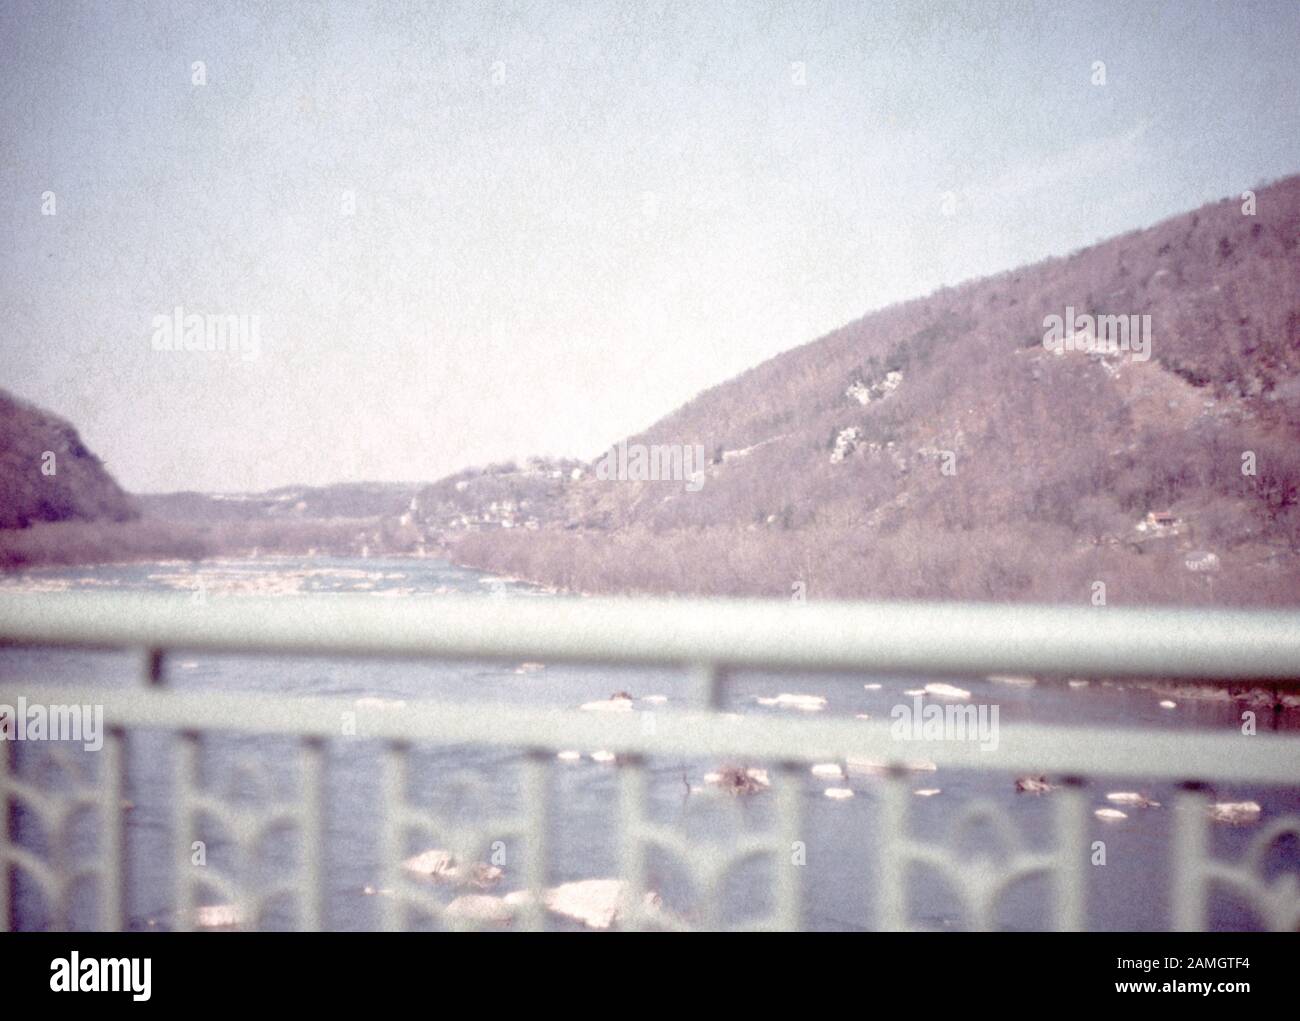 Nakuläres Foto, aufgenommen auf einer analogen 35-mm-Filmtransparenz, vermutlich, um weißen Metallzaun in der Nähe des Körpers von Wasser während des Tages, 1965, abzubilden. Wichtige Themen/Objekte, die erkannt wurden, sind Himmel, Berg, Natur und graue Farbe. () Stockfoto